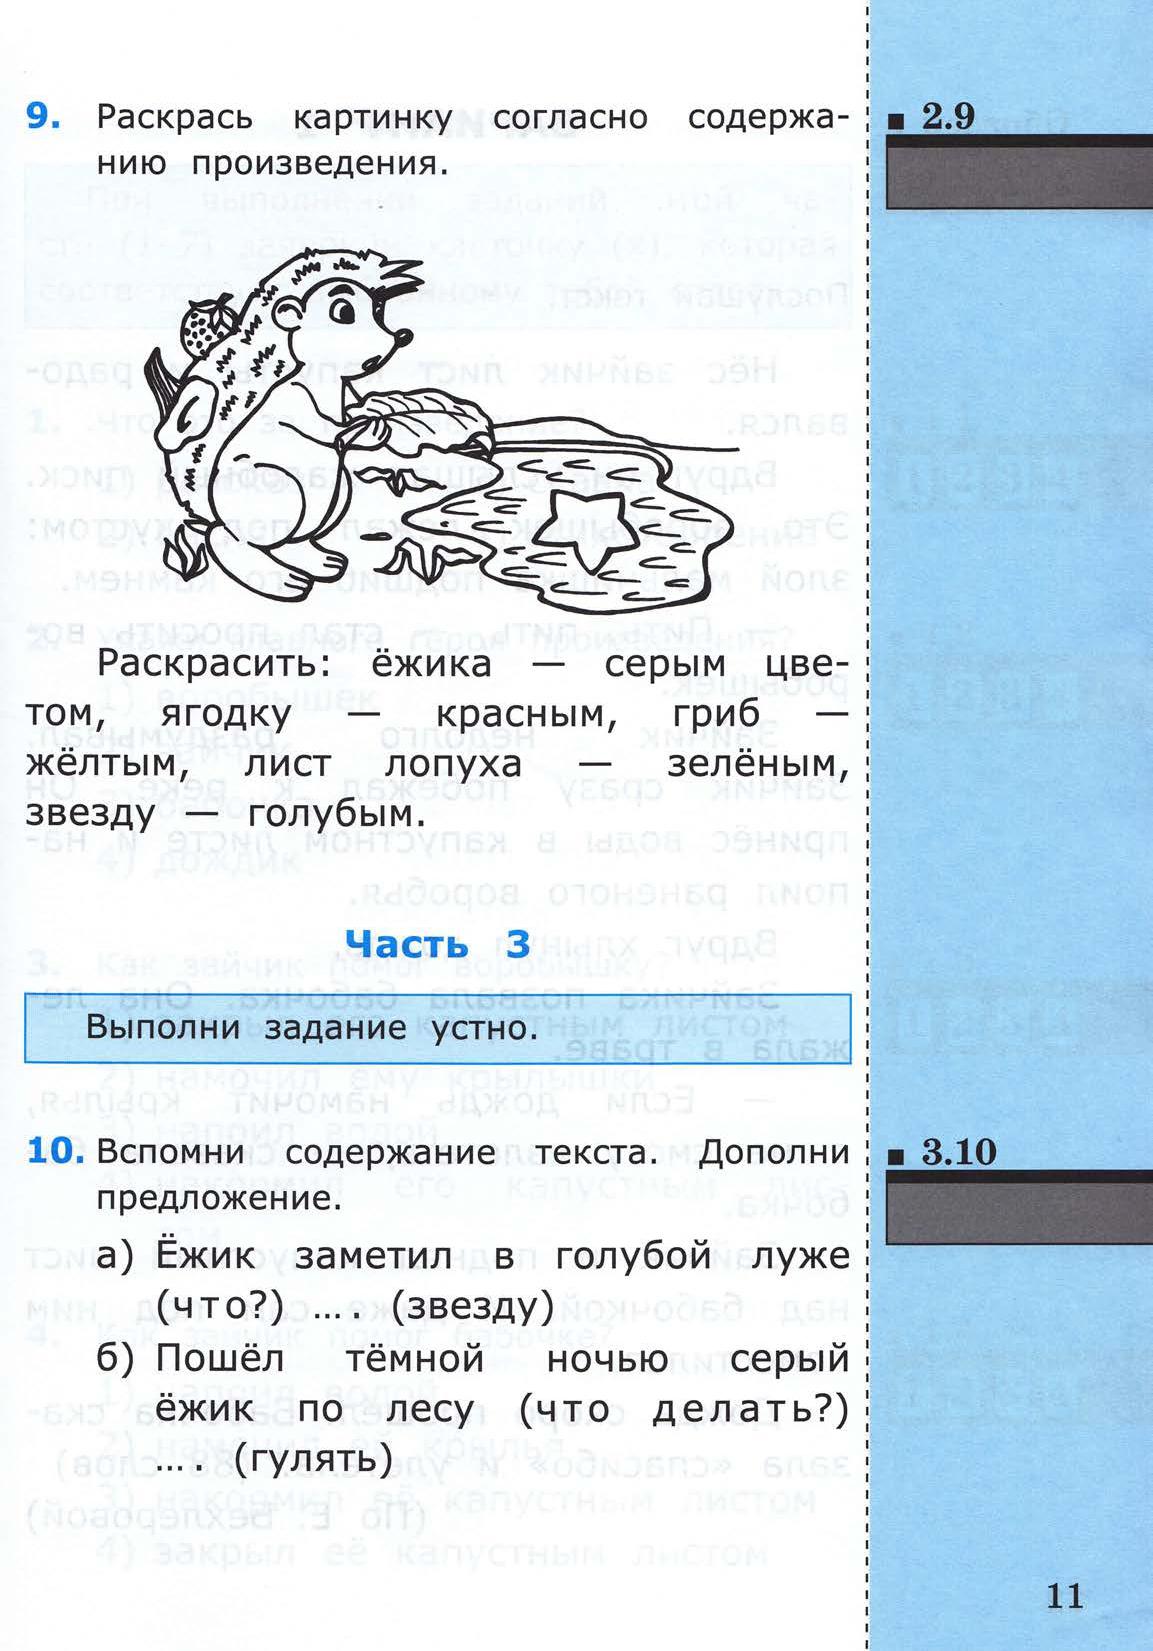 Тест по чтению 1 класс школа россии. Тест по чтению 1 класс. Тестирование чтения 1 класс. Входной тест 1 класс. Тест для чтения 1 класс.